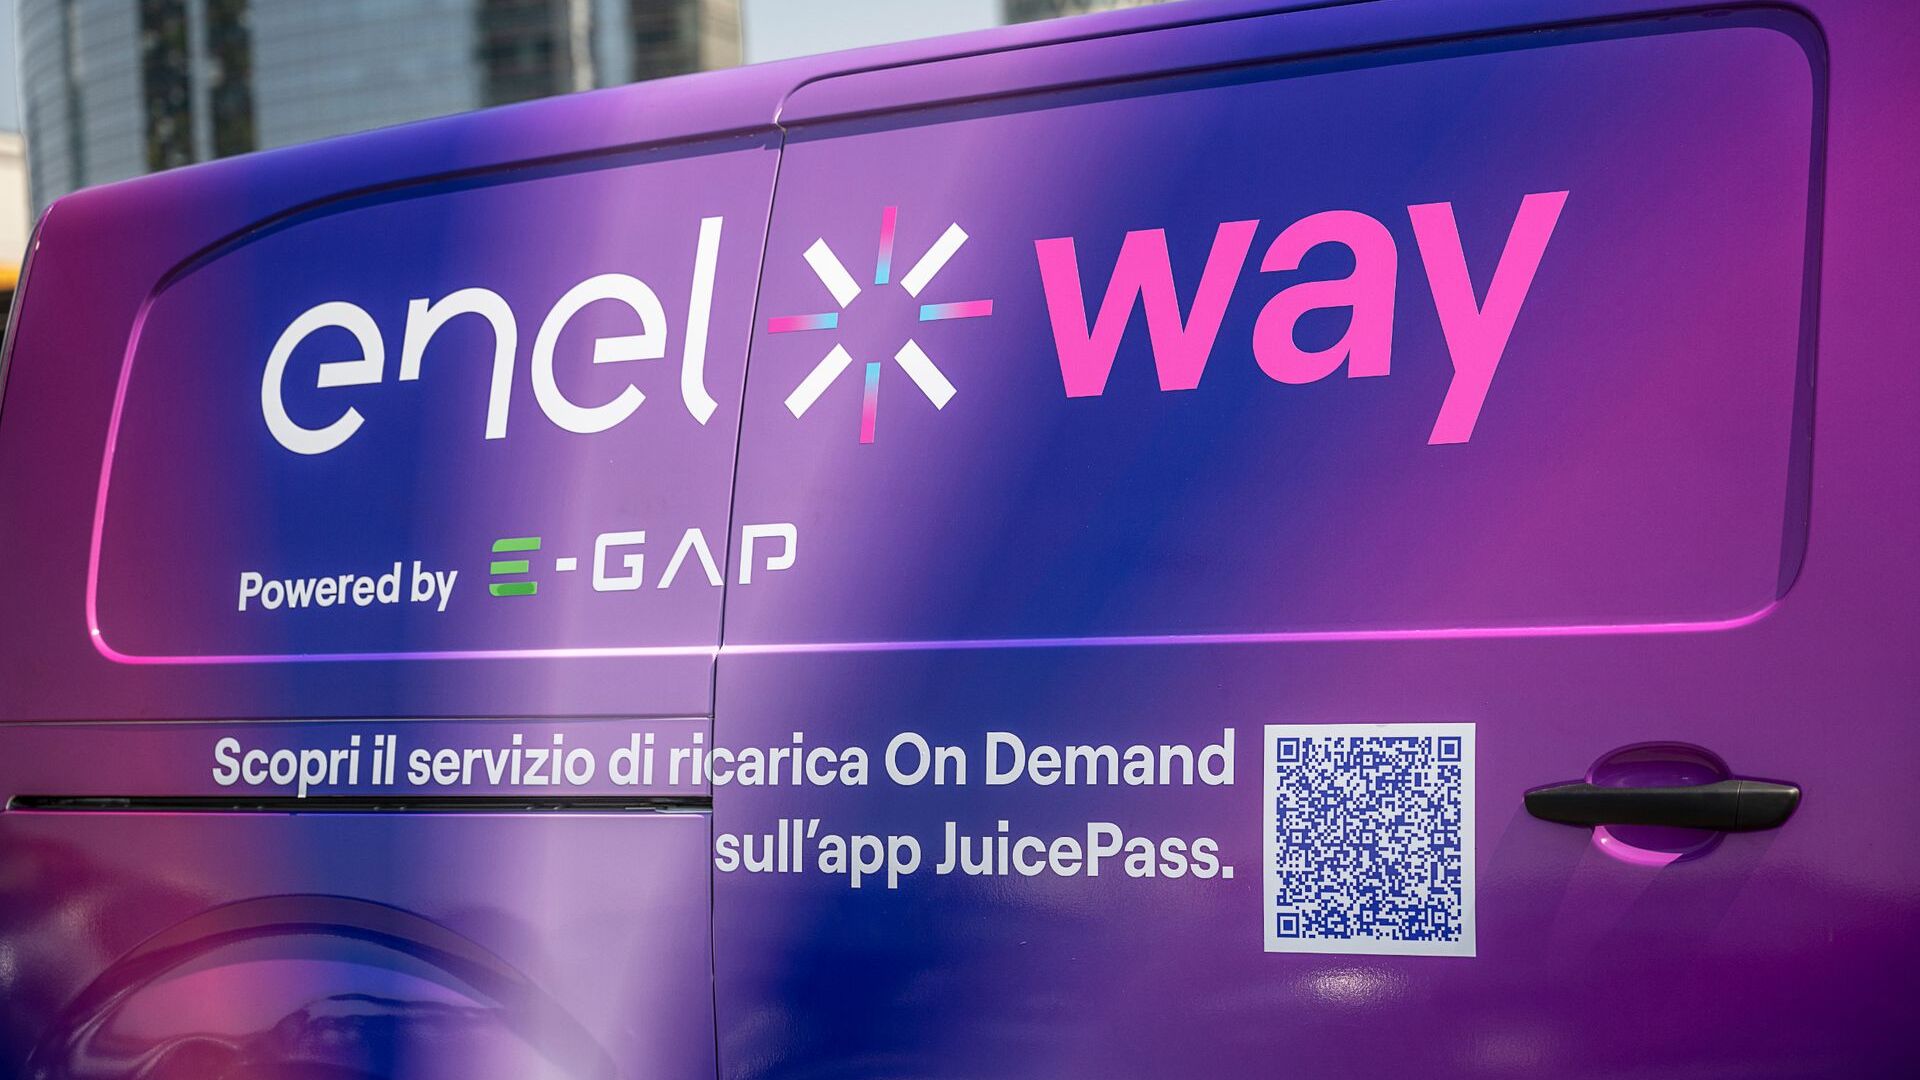 I van di ricarica veloce della collaborazione fra Enel X Way ed E-GAP